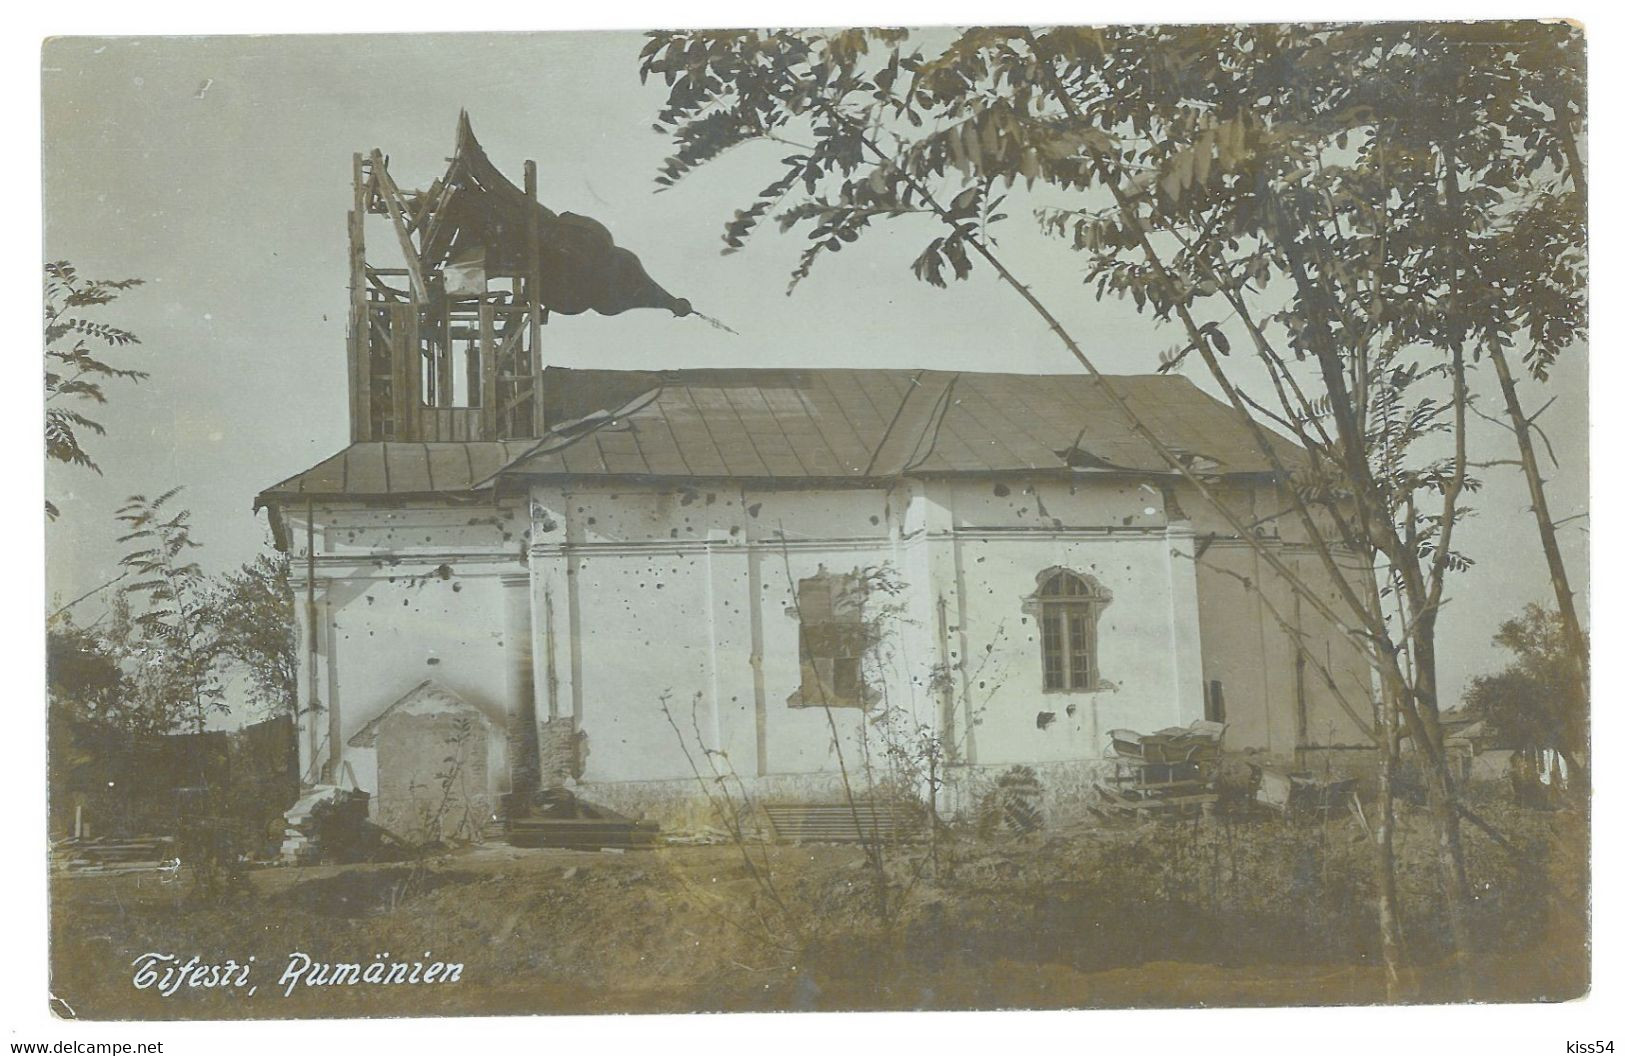 RO 12 - 18867 TIFESTI, Vrancea, Romania - Old Postcard, Real PHOTO - Unused - Rumania